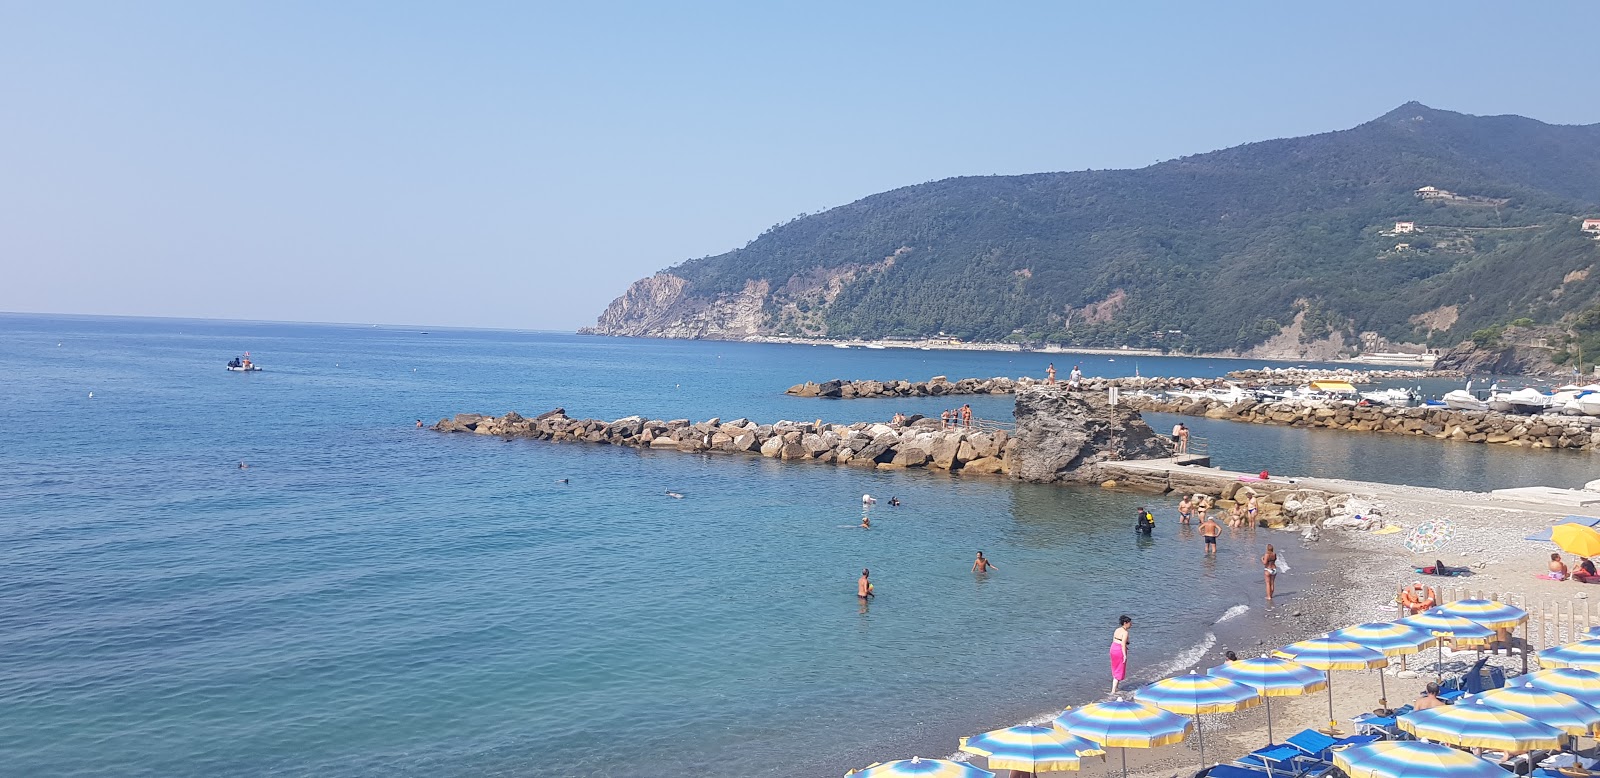 Moneglia beach II的照片 背靠悬崖